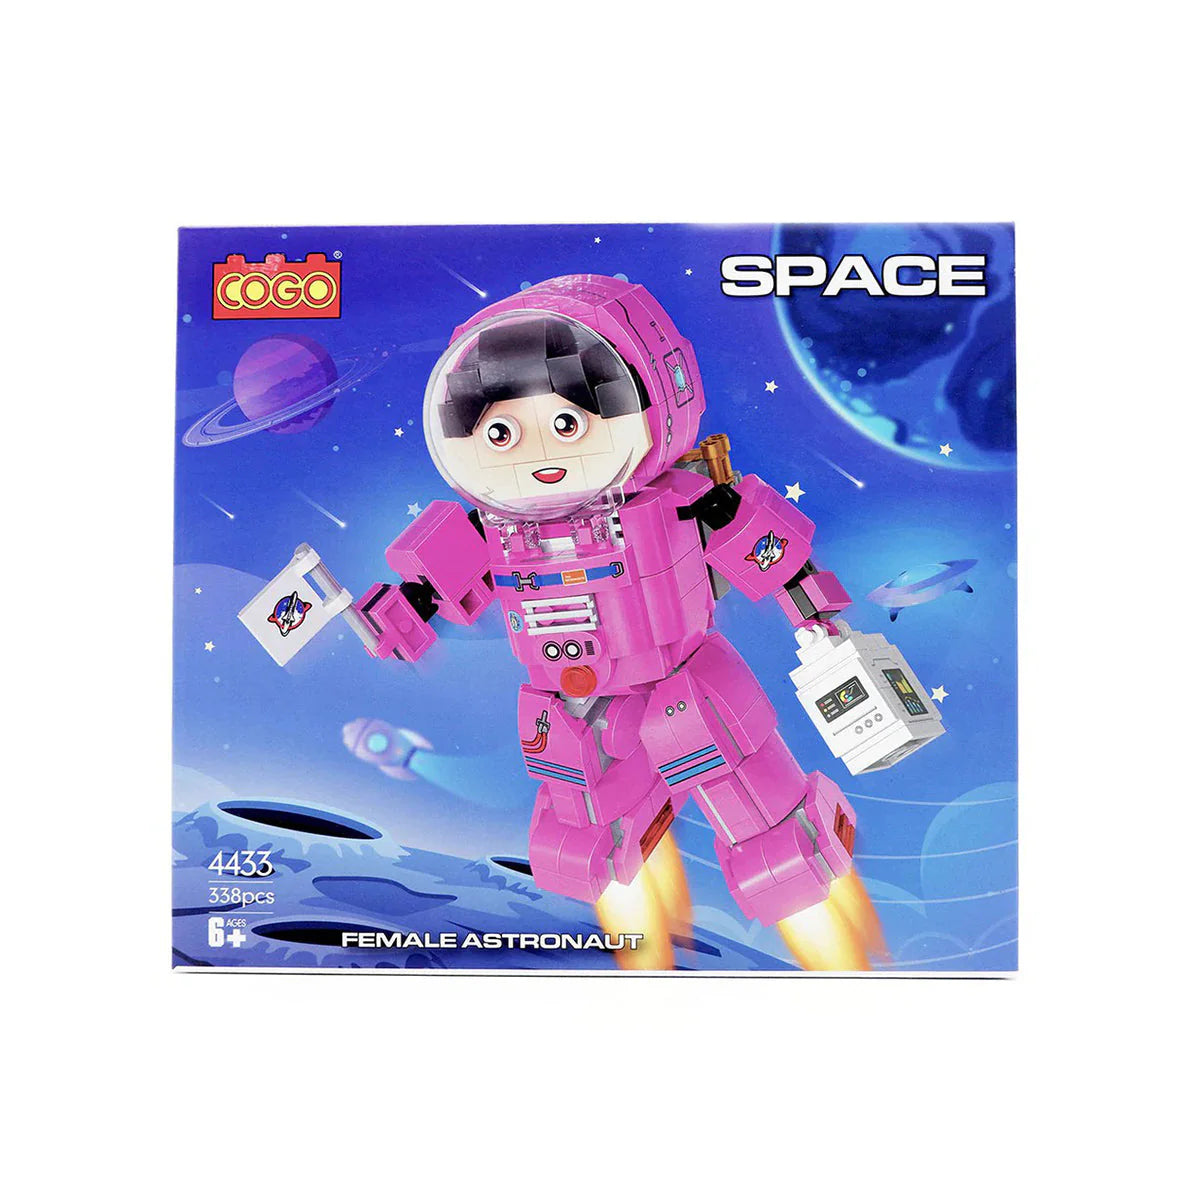 Cogo Space Female Astronaut Building Blocks